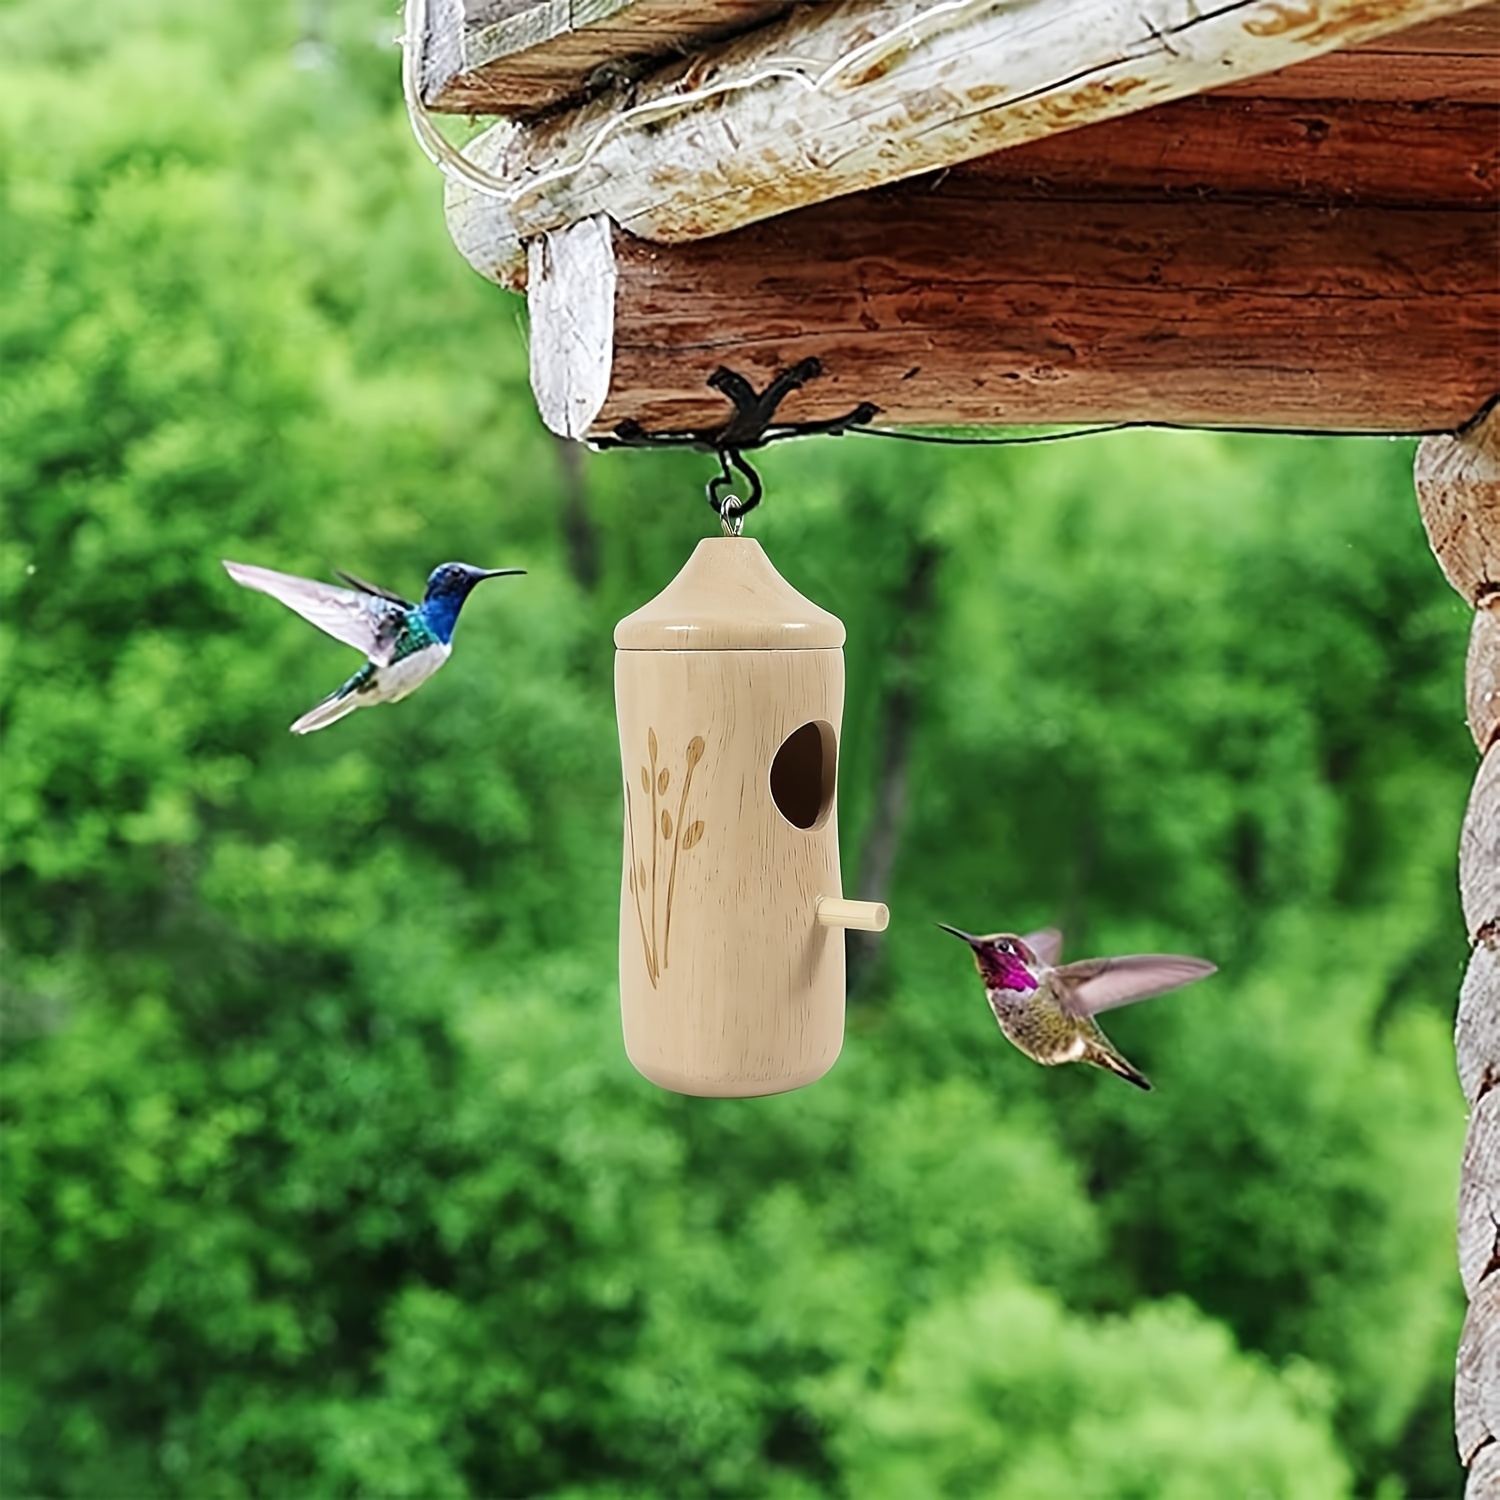 Mangeoire à oiseaux en bois de style villa, maison d'oiseau